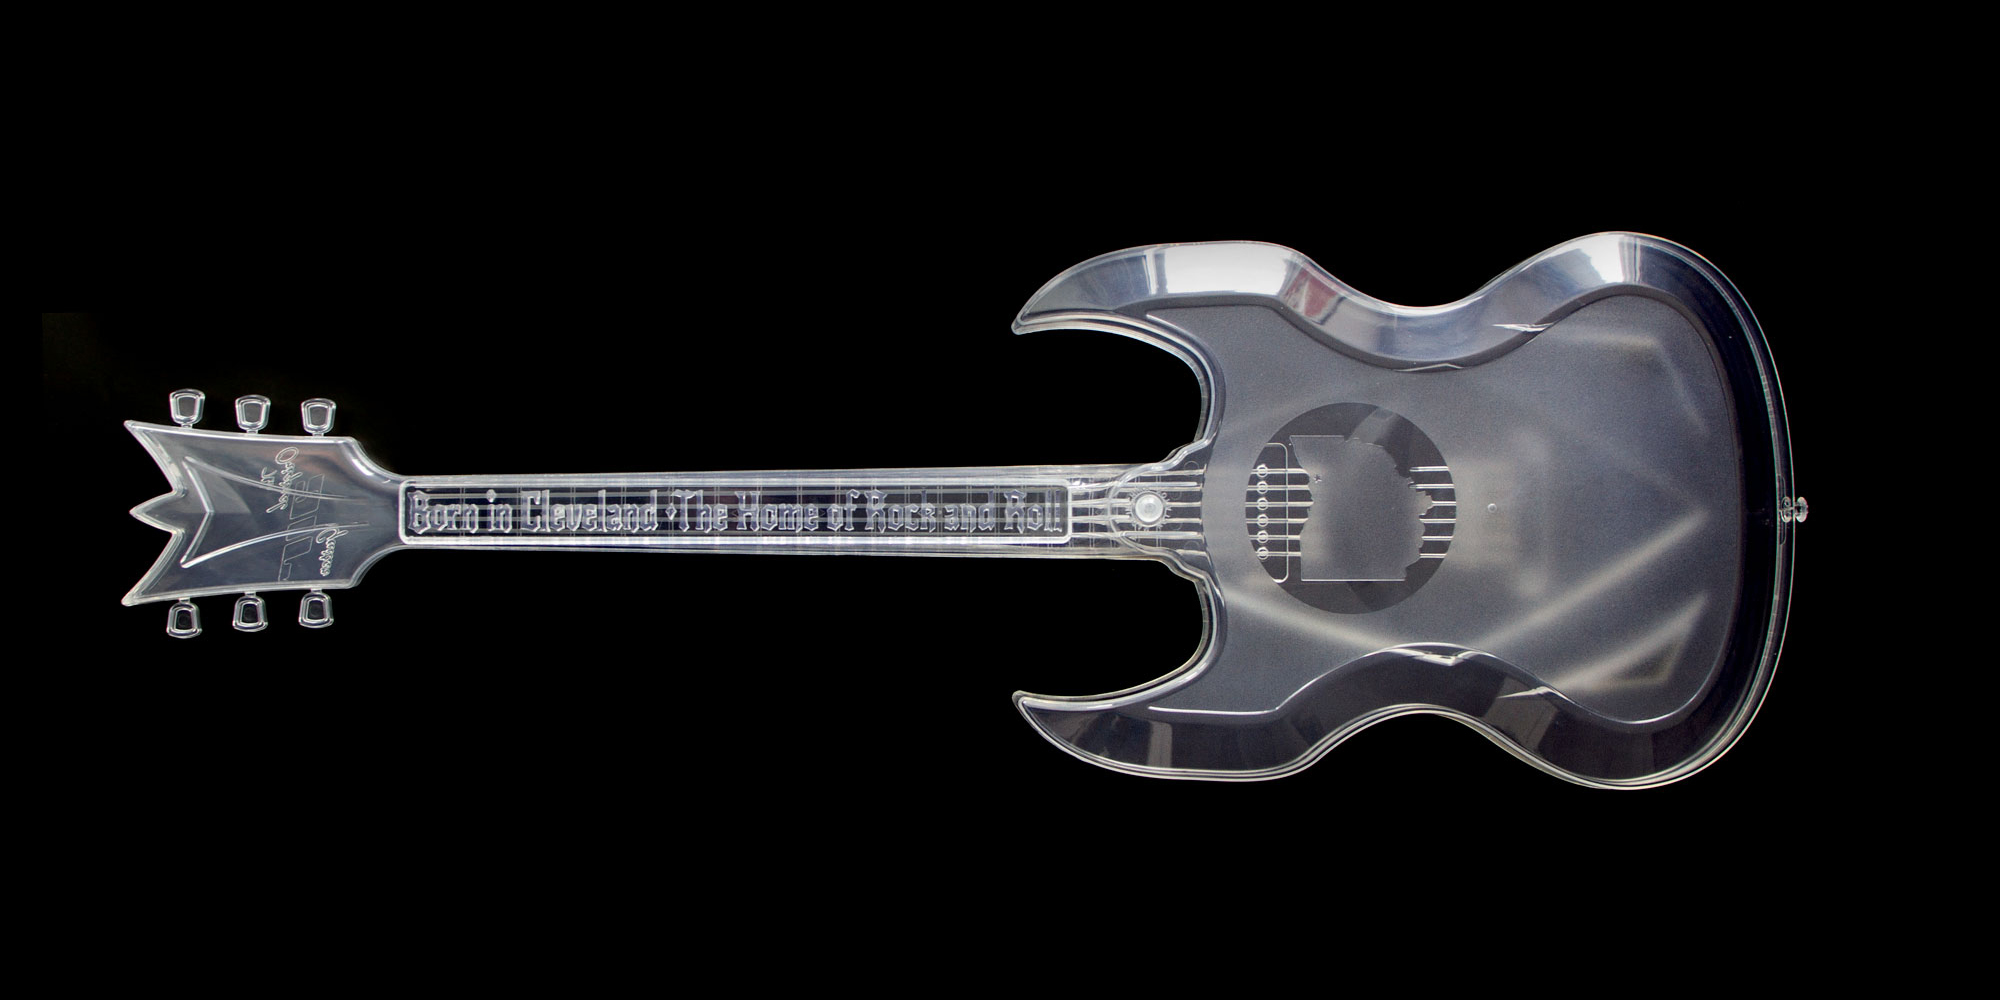 ispirare la musica-giocattolo a infrarossi con LED Flash Luci-Nero Air Guitar 